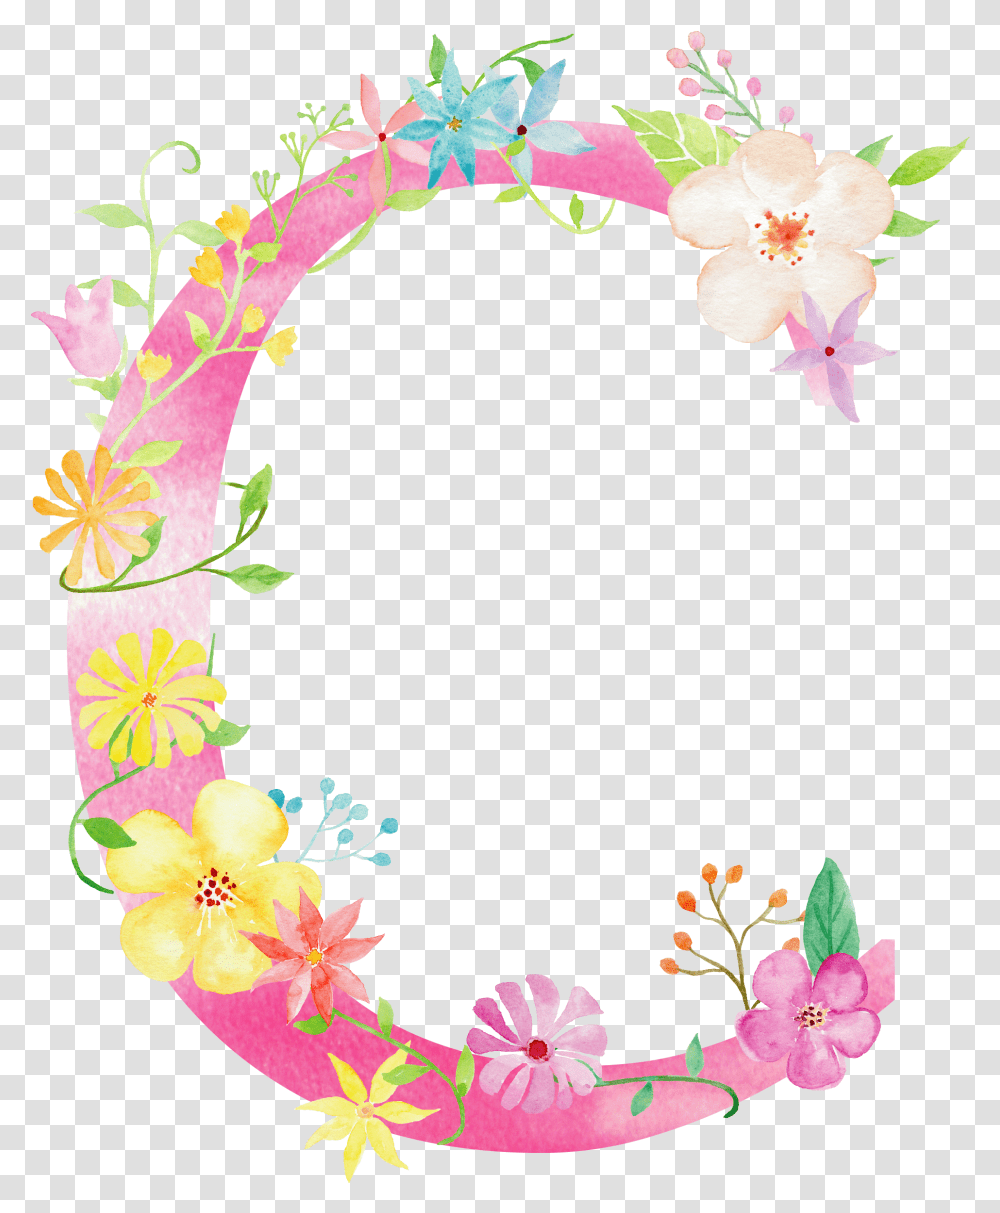 Flower Clipart Letter M C Letters, Plant, Blossom, Floral Design Transparent Png